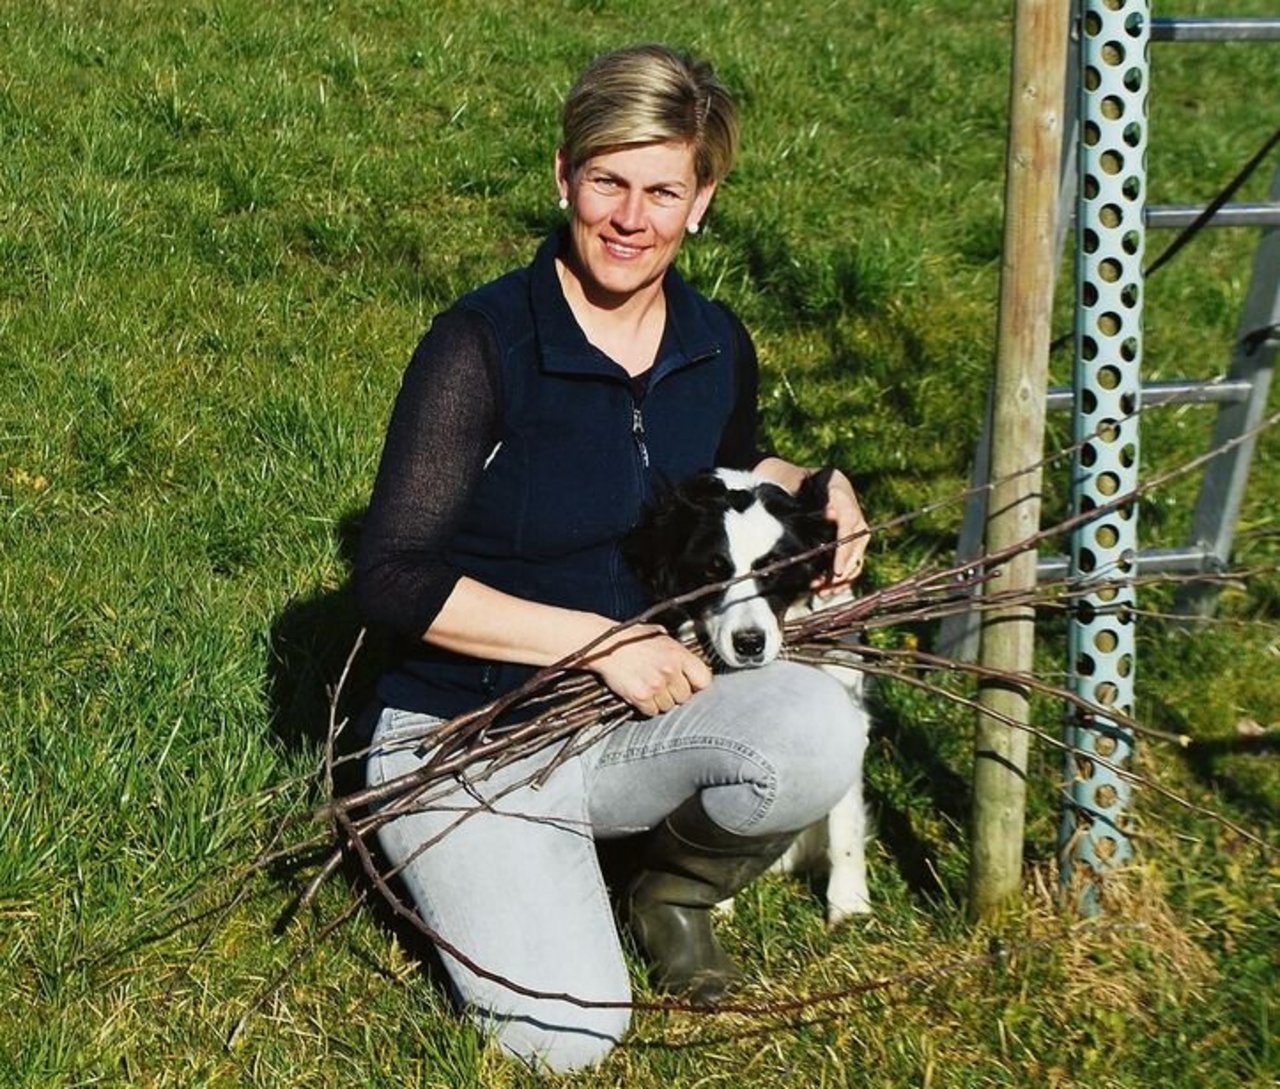 «Mer puured», sagt Elisabeth Rüttimann, Präsidentin der Luzerner Bäuerinnen, wenn sie nach ihrem Beruf gefragt wird.